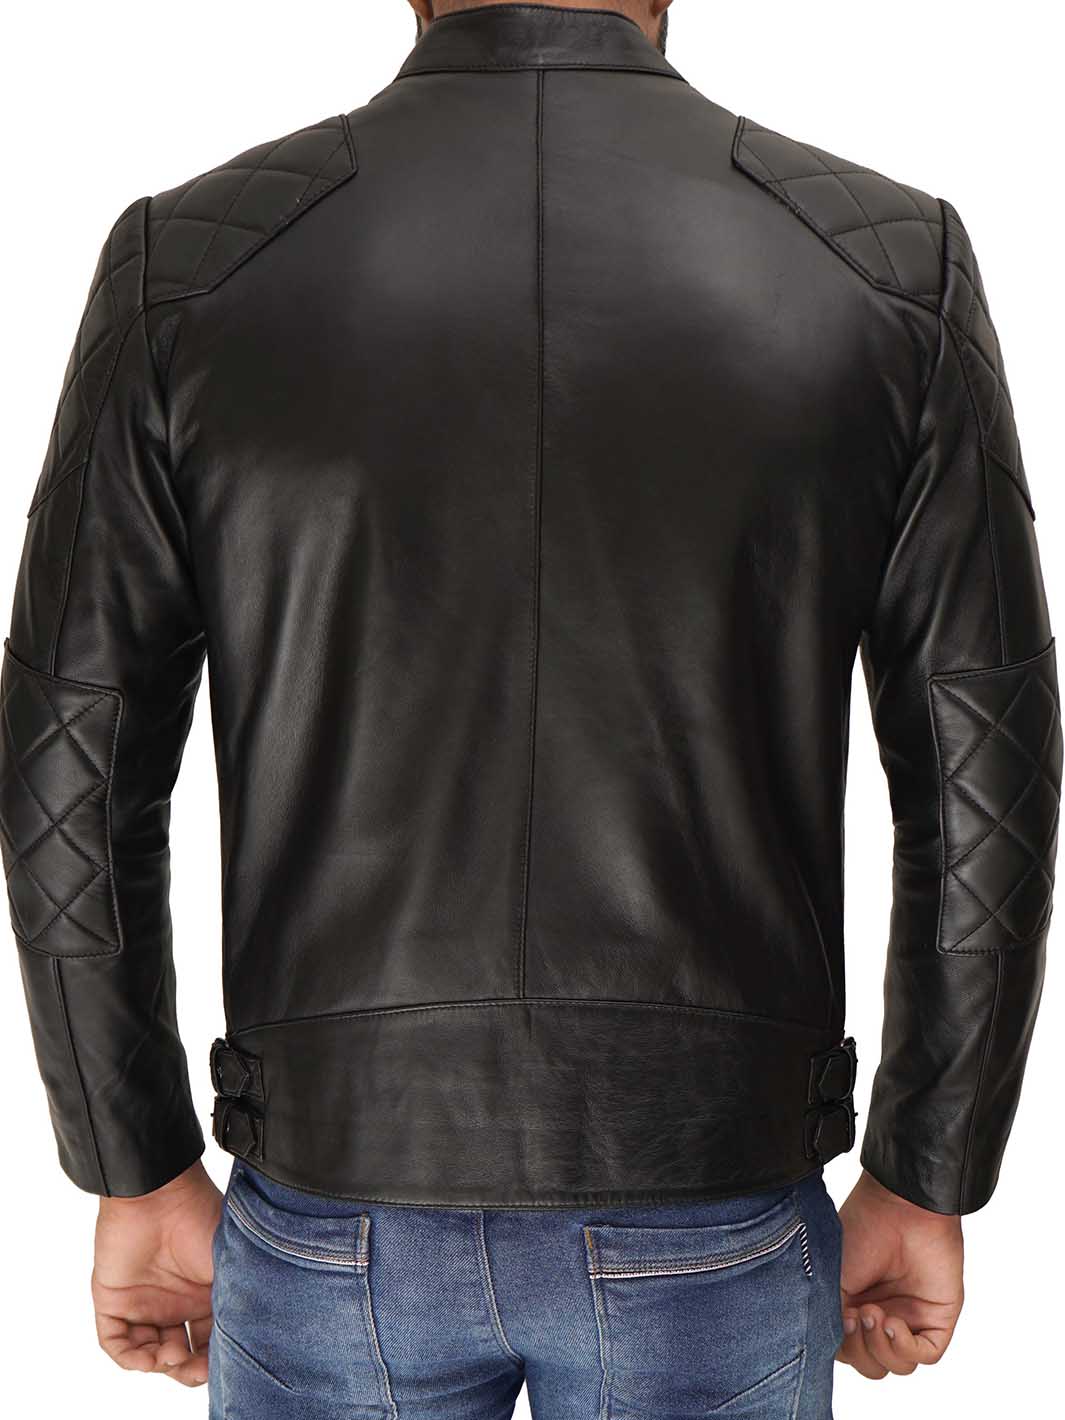 David Beckham Leather Jacket 